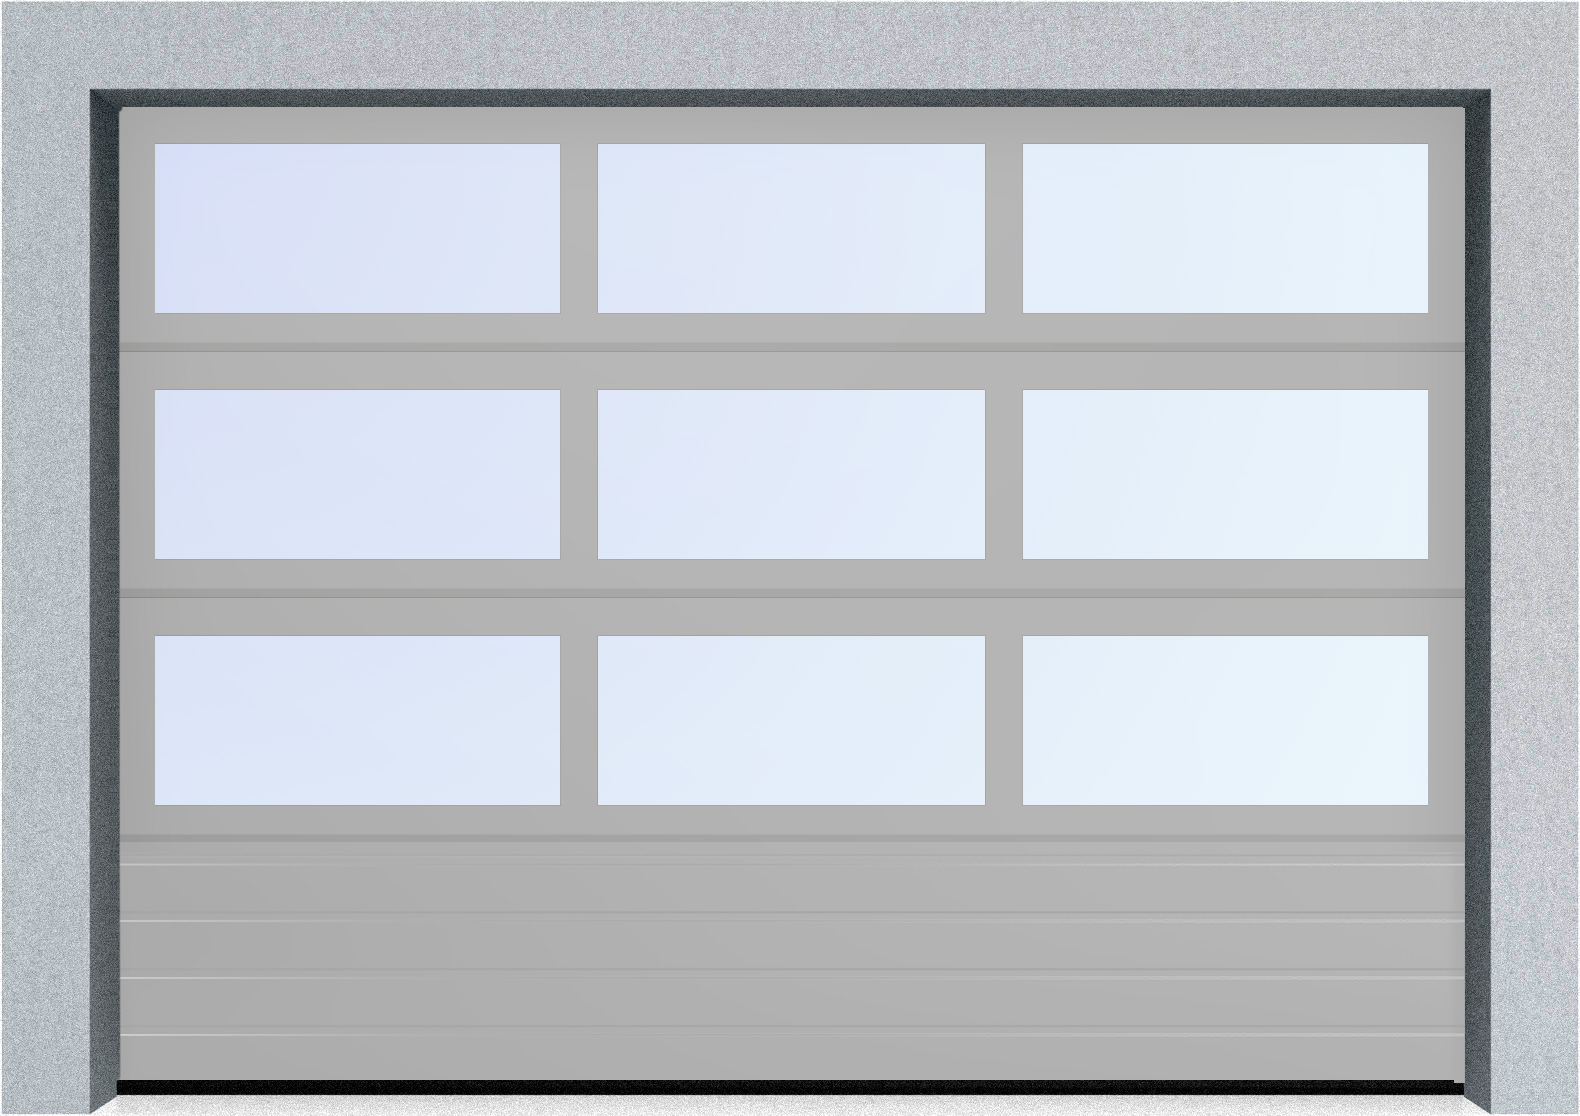  Автоматические секционные панорамные ворота серии AluTrend с комбинированным типом полотна (АЛПС) 6500х4500 S-гофр, Микроволна стандартные цвета, фото 18 